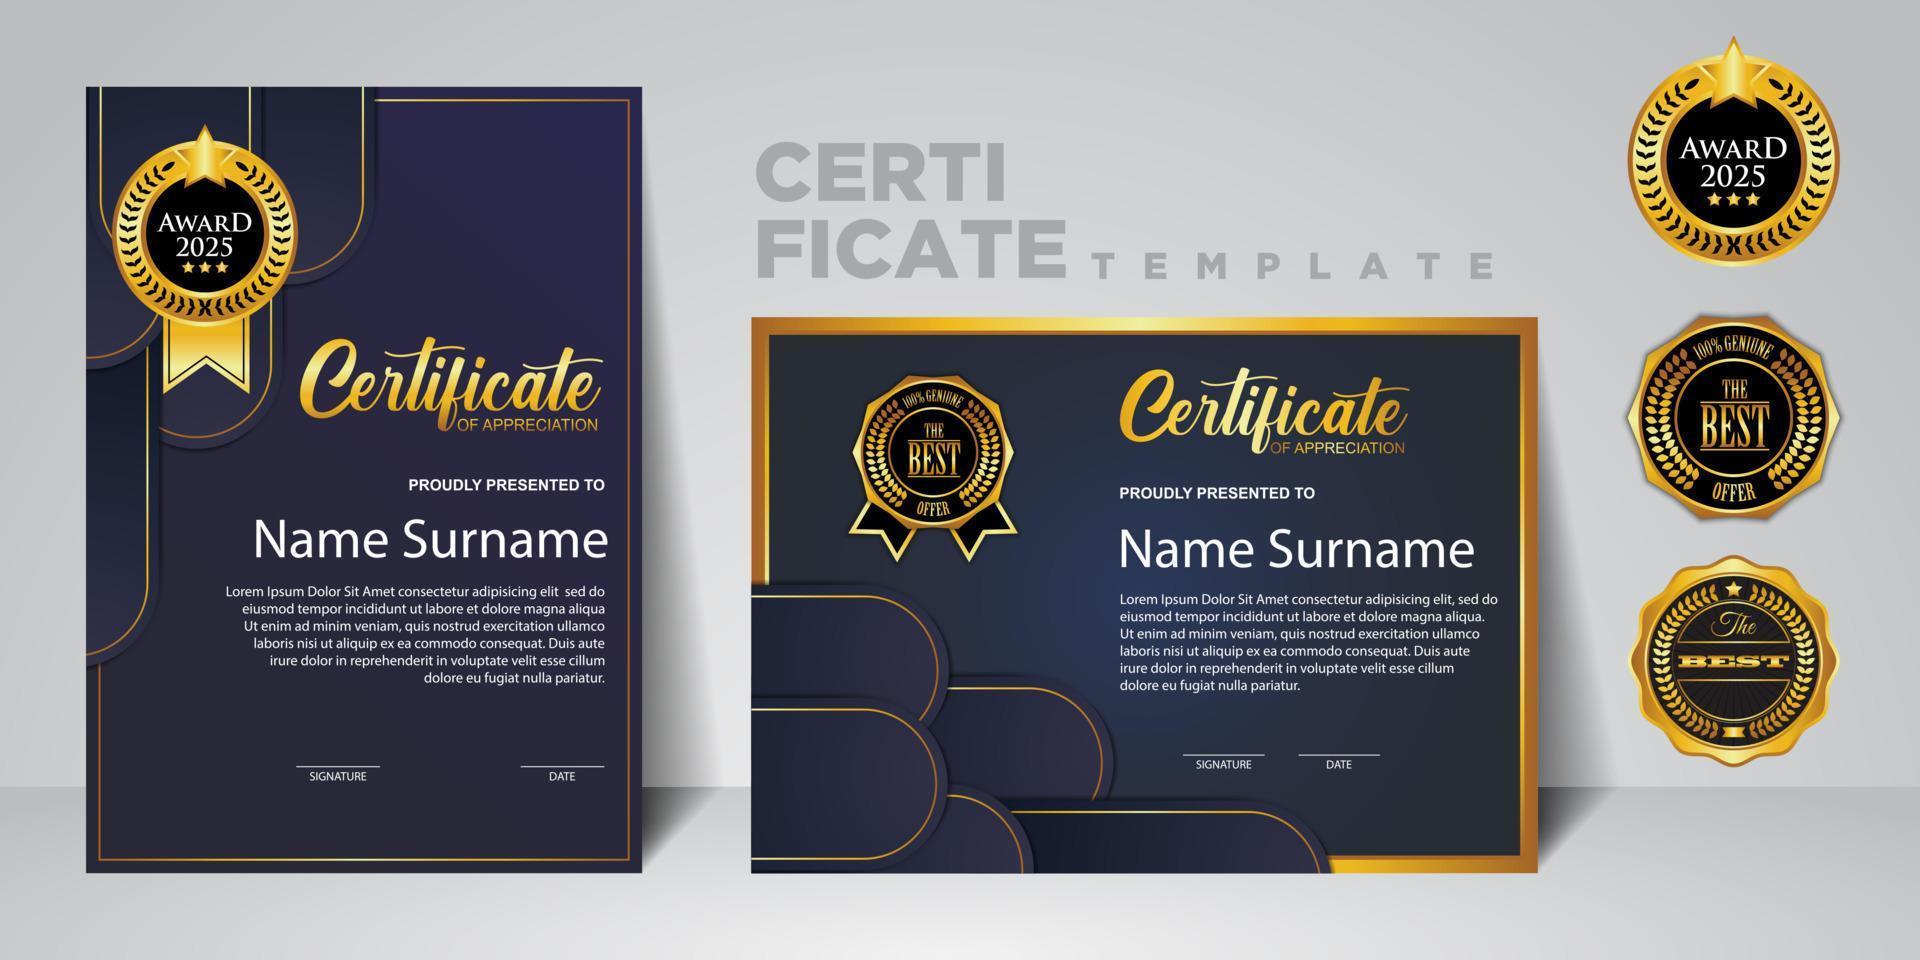 plantilla de certificado moderno en gradación y colores dorados, lujo y estilo moderno e imagen vectorial de estilo de premio. adecuado para la apreciación. vector premium.